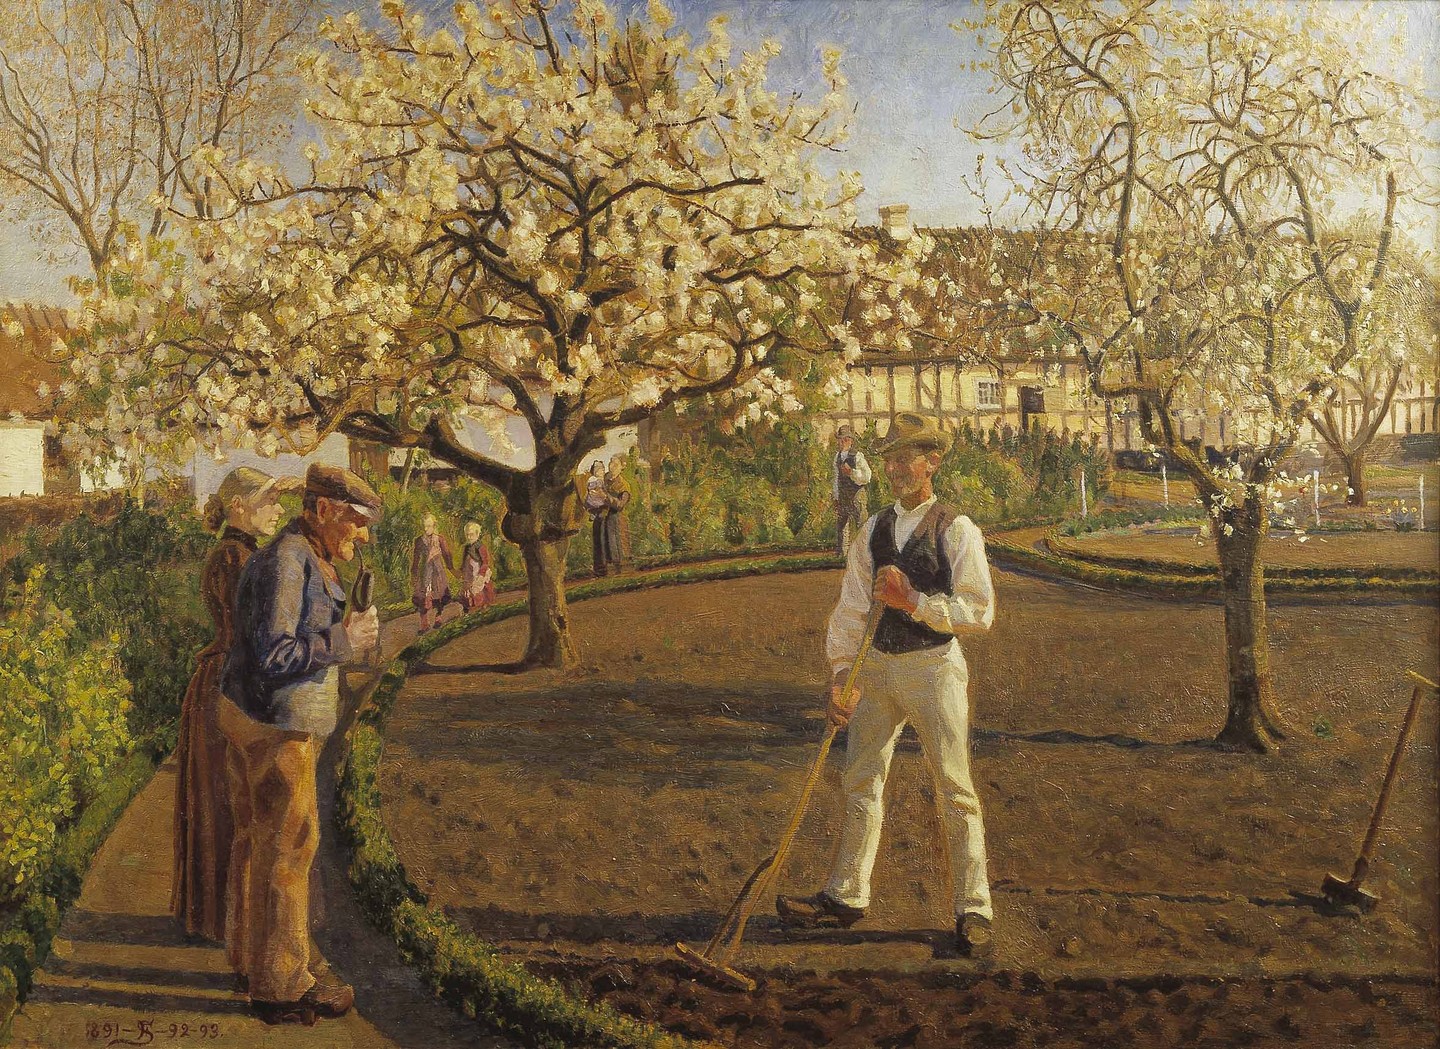 Fritz Syberg: ’Spring’, 1891-1893. The Hirschsprungske Collection